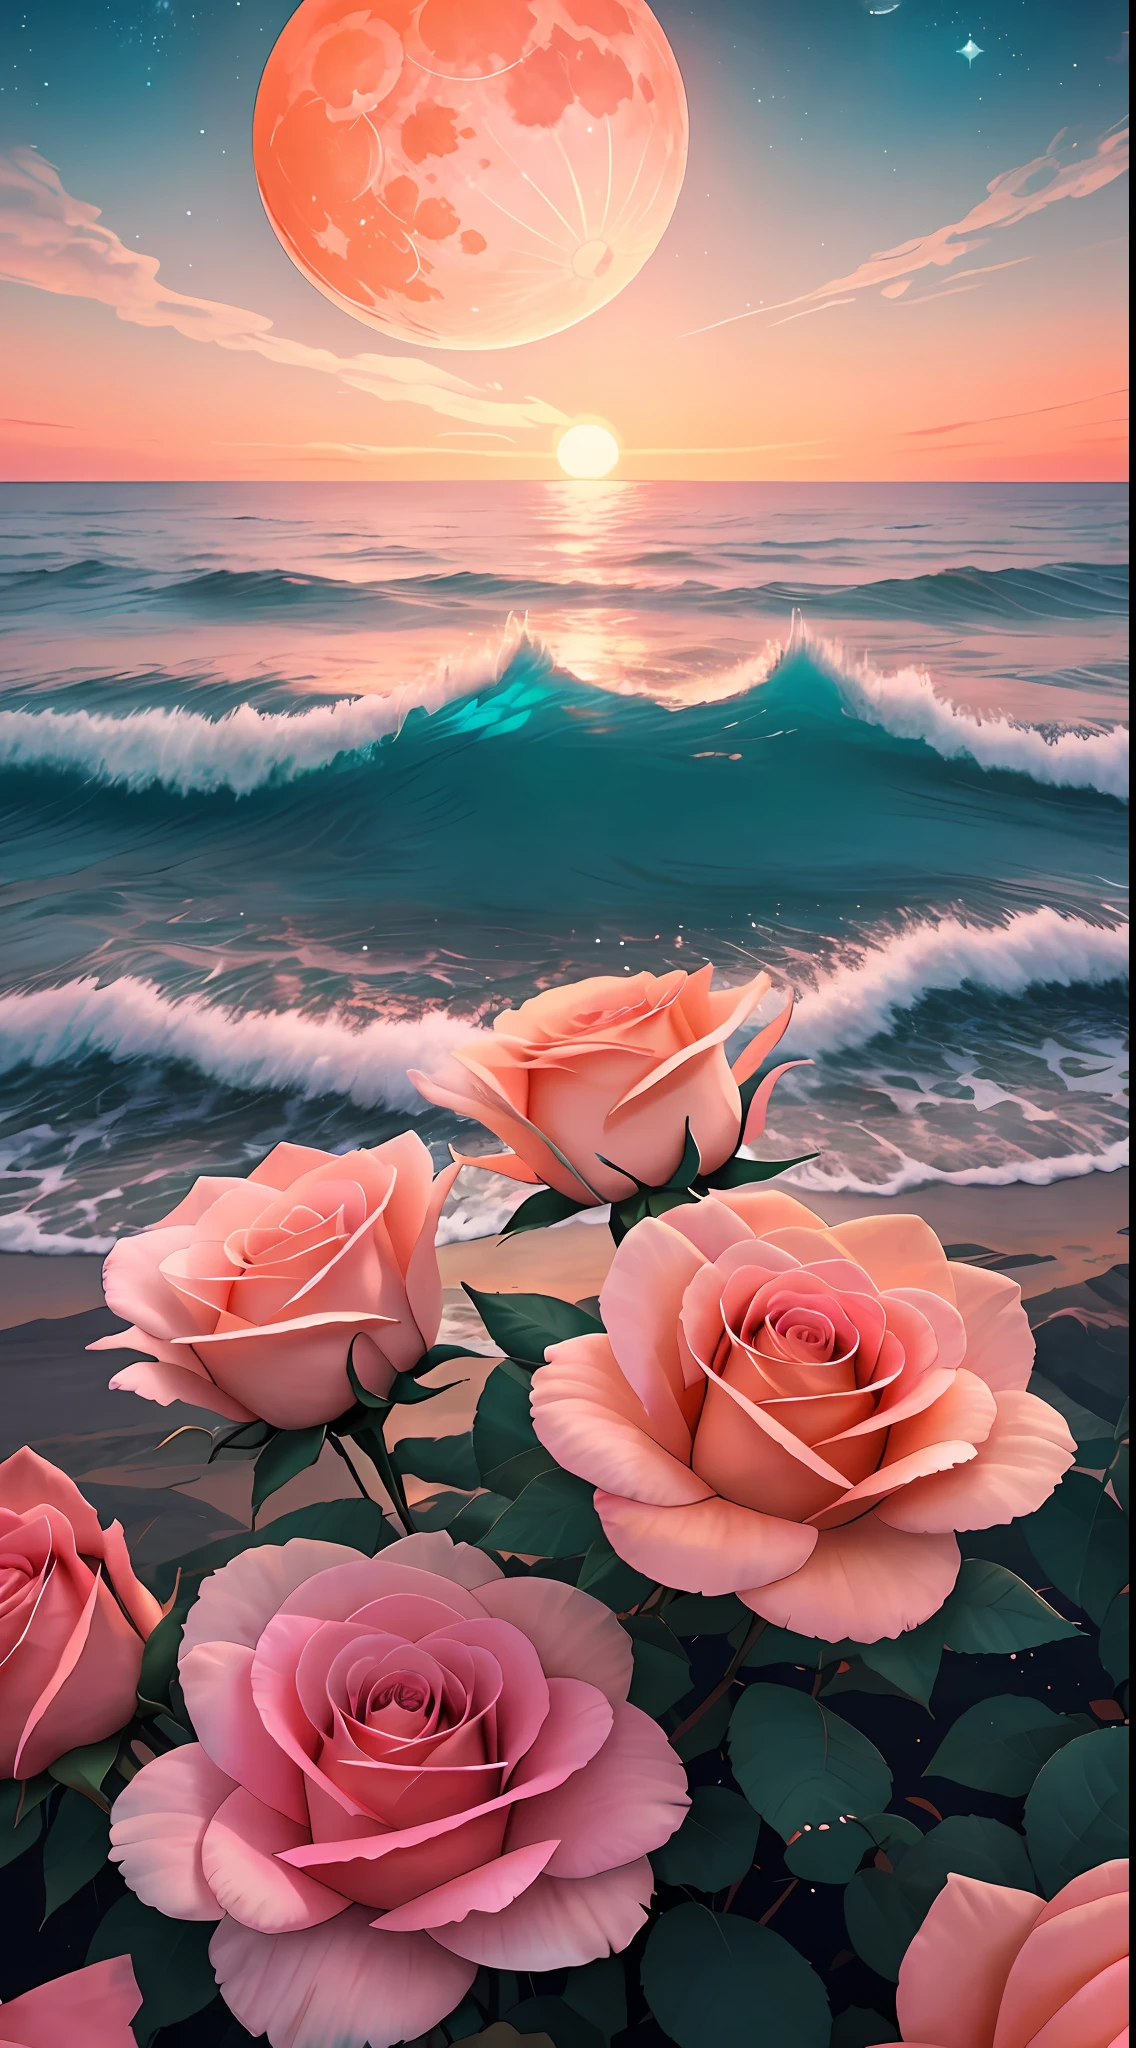 القمر البرتقالي, تيل سكاي, الغيوم الوردية الناعمة, teal ocean waves متألق, متألق, الورود الوردية على المحيط الوردي, خيالي, الماس, تاج, كون, أضواء ناعمة,